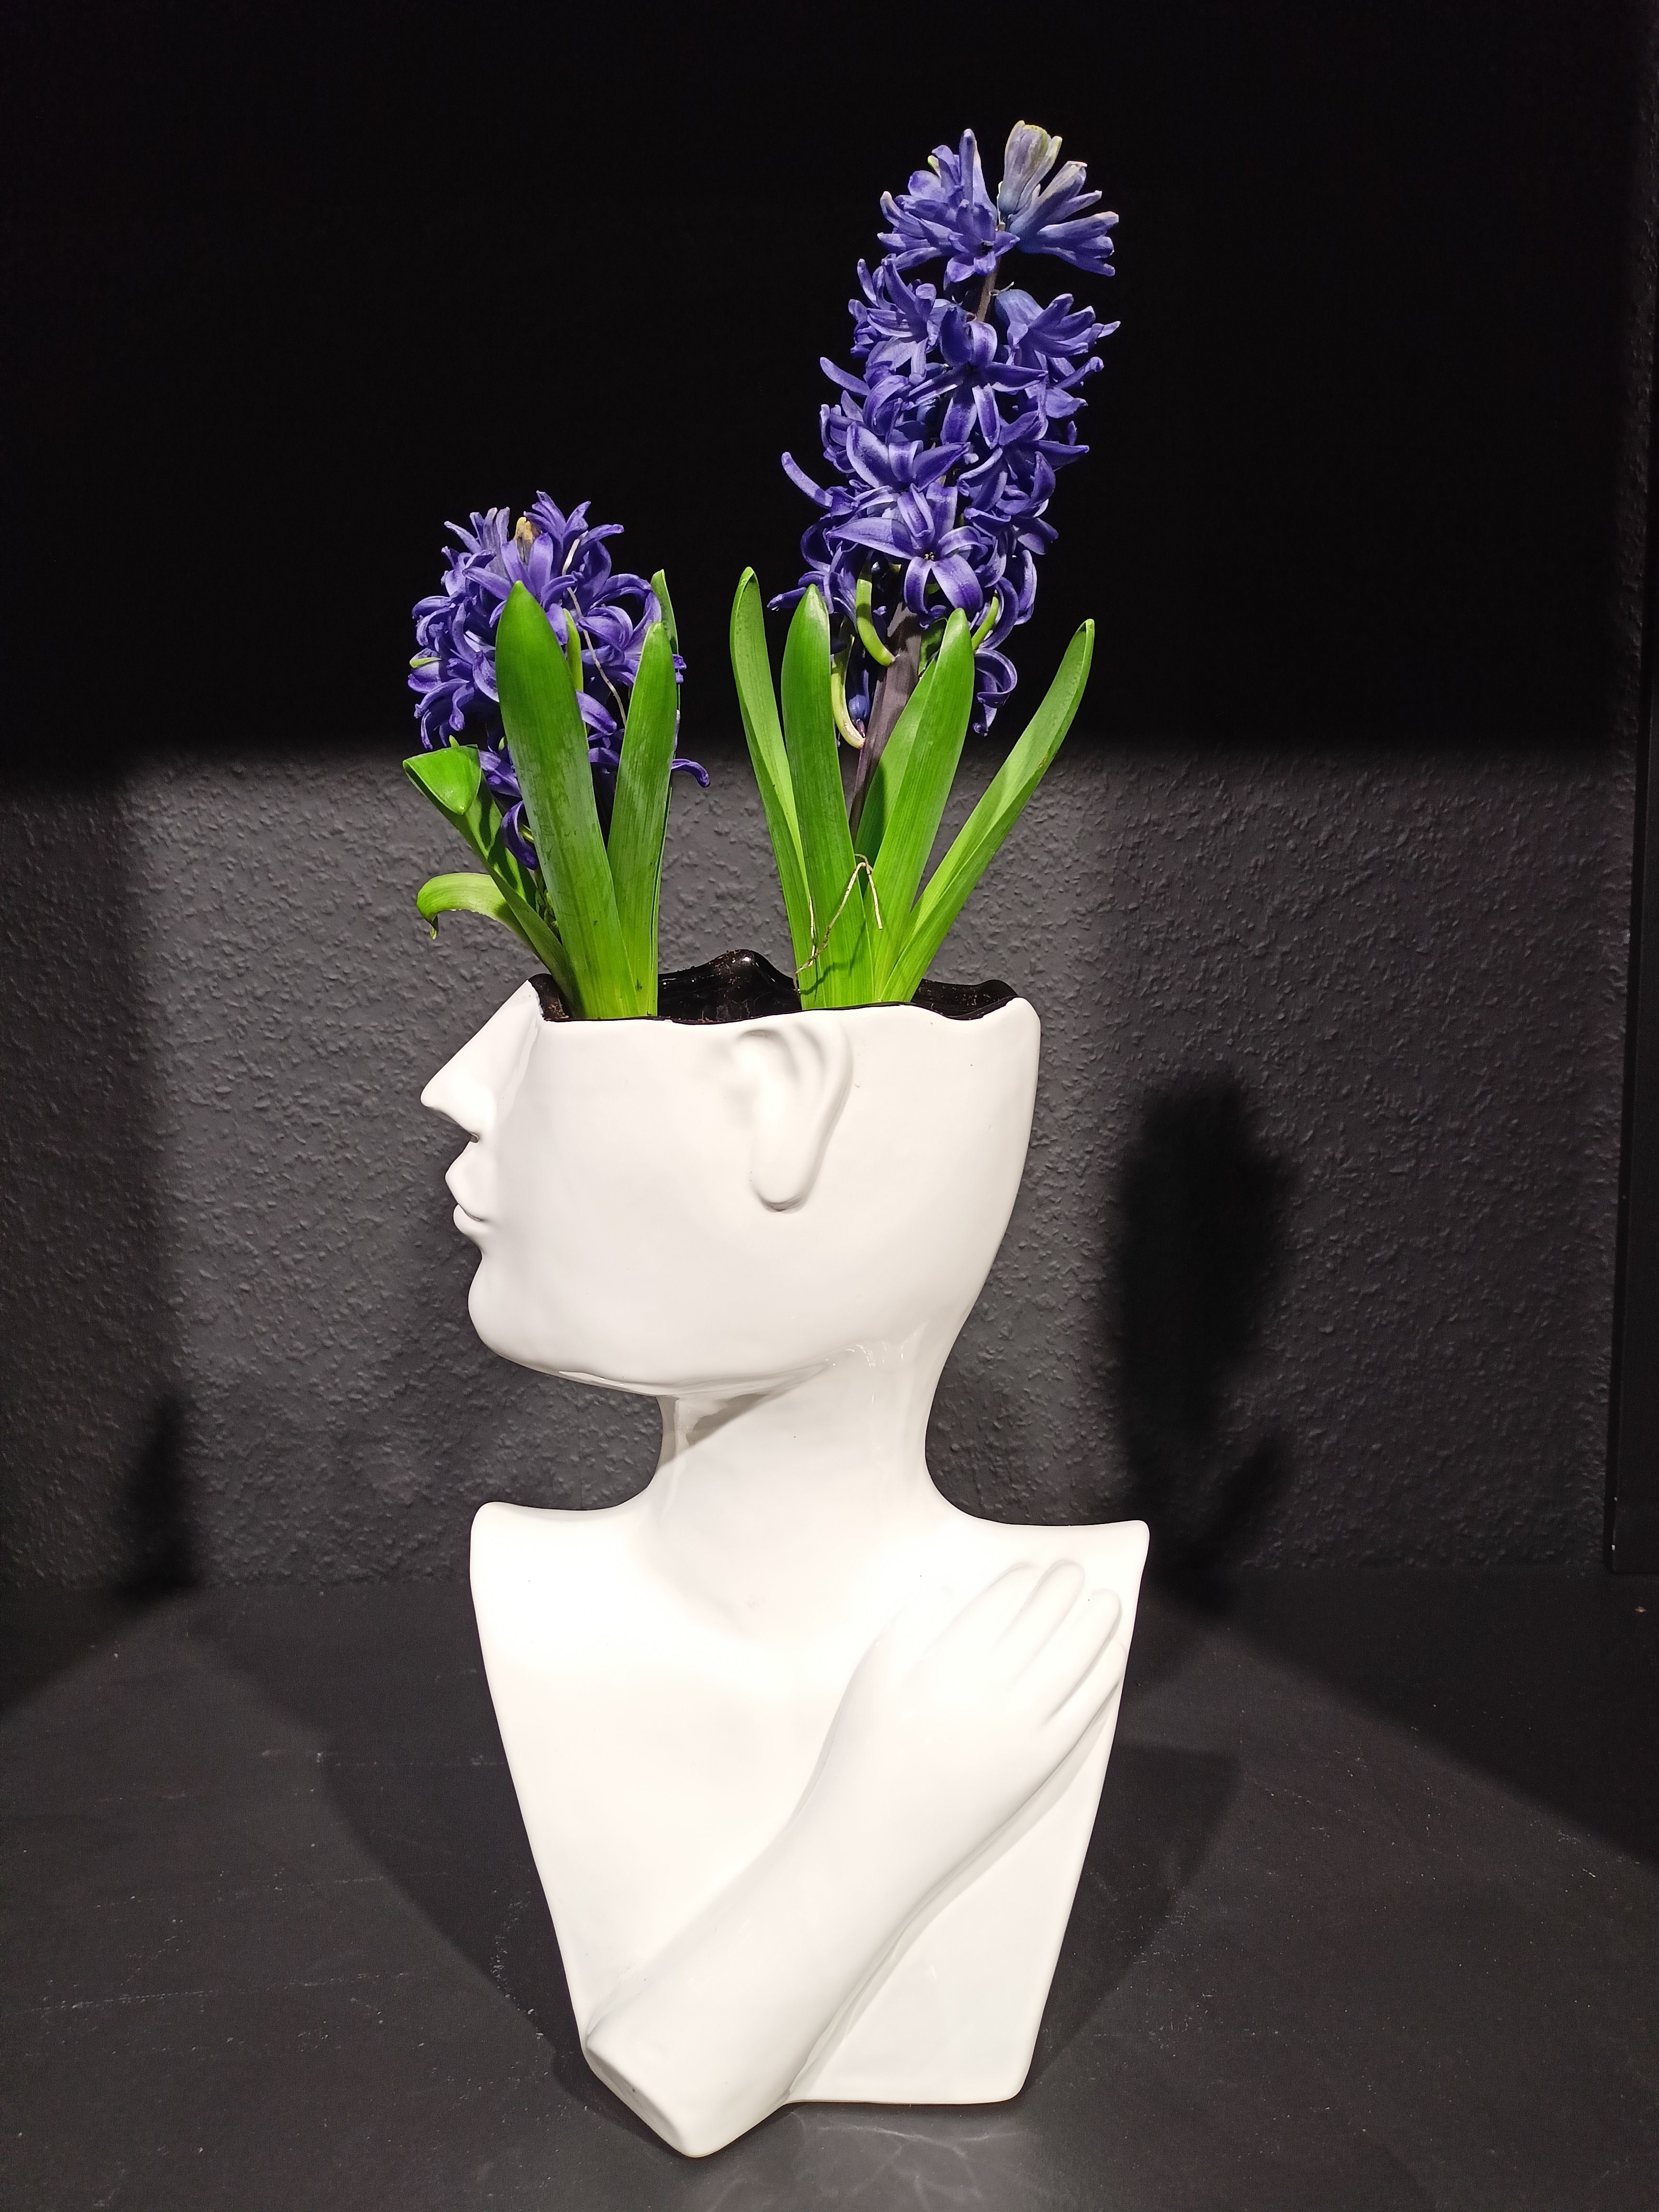 GlasArt Dekovase Vase 26 Keramik Wohnzimmer Vase cm weiß Gesicht Blumenvase